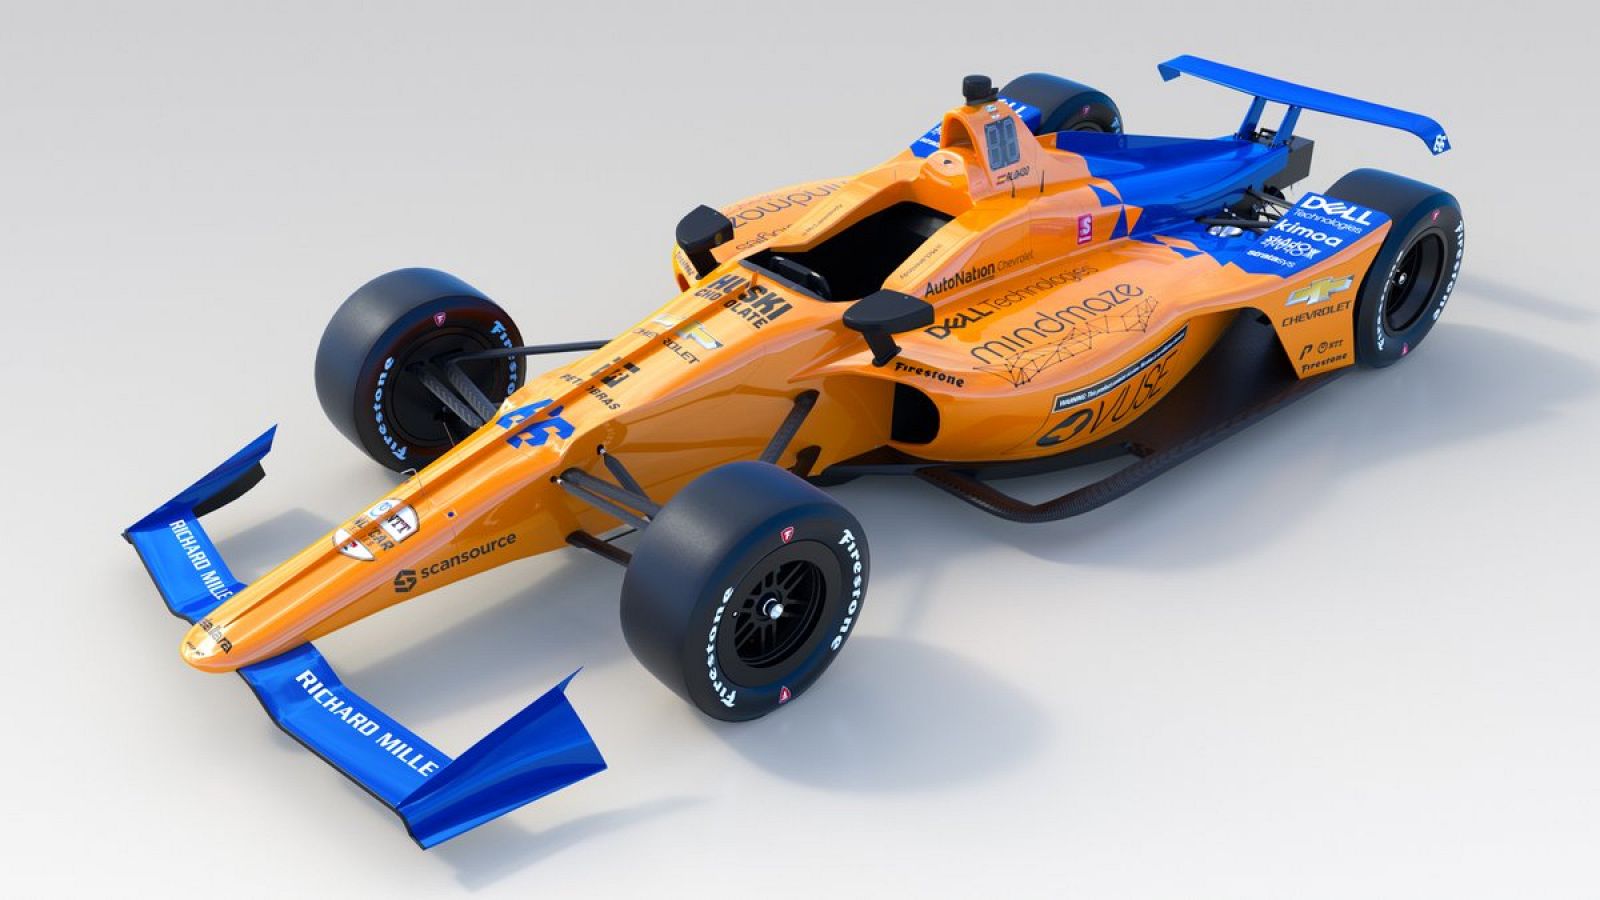 Imagen del McLaren66 con el que Fernando Alonso tratará de ganar las 500 Millas de Indianápolis.